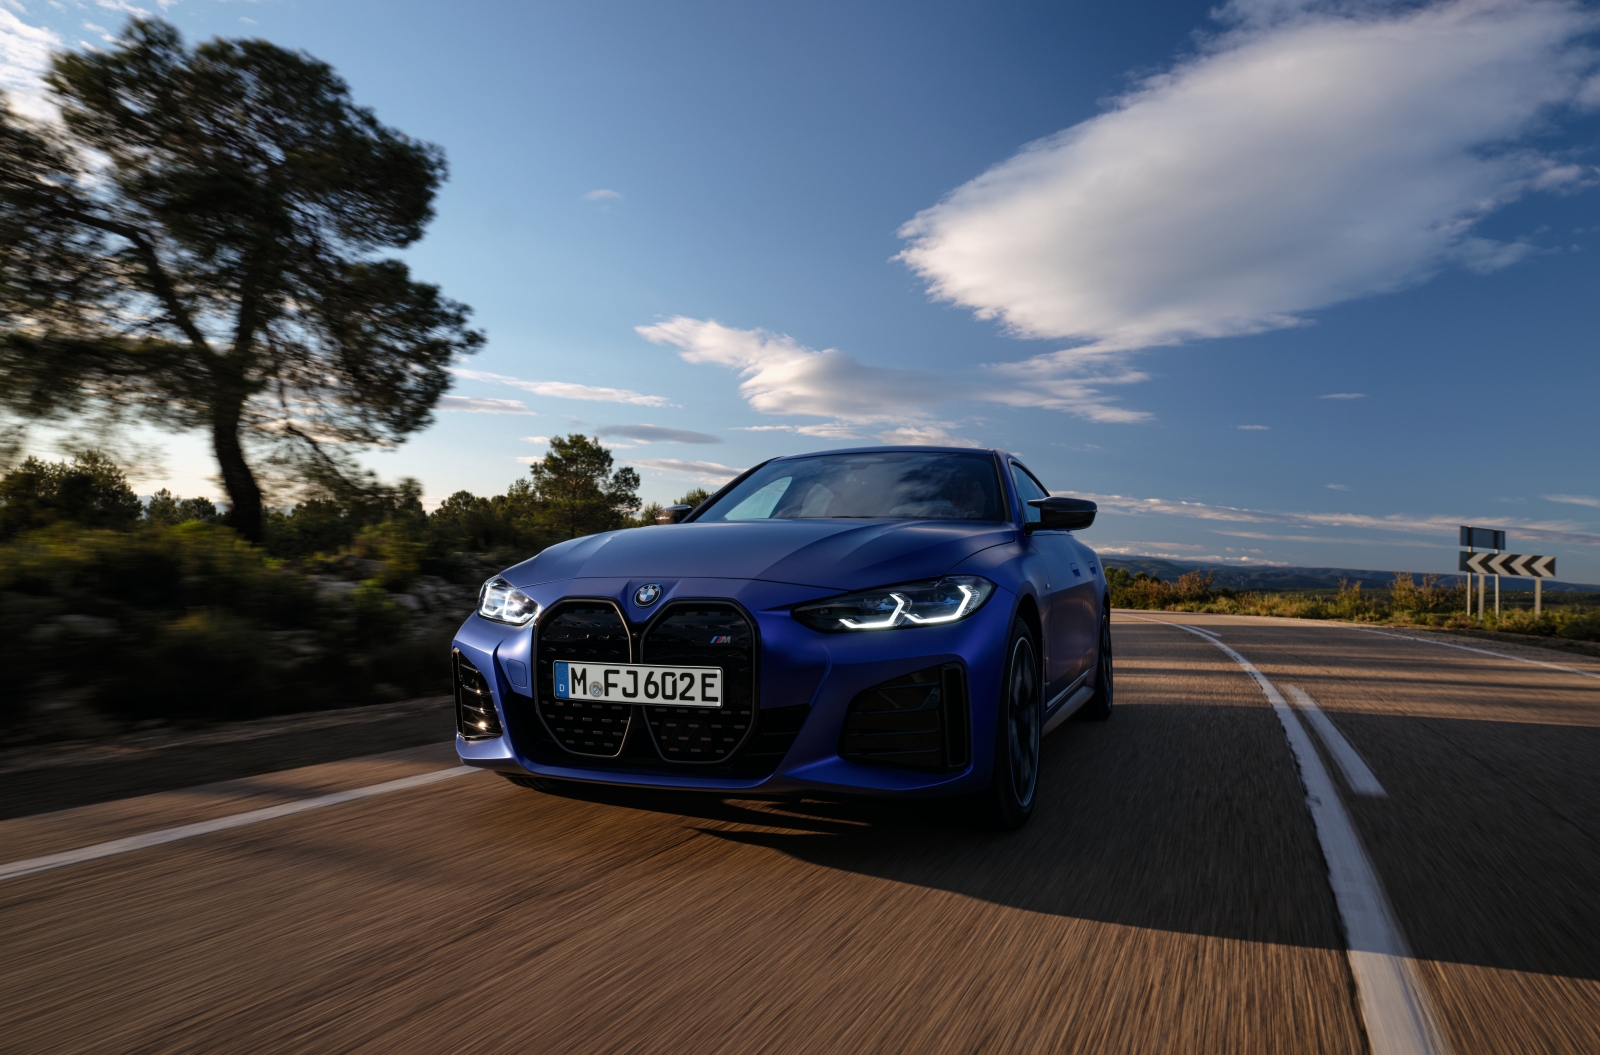 BMW M 家族成員 i4 M50 具備亮眼的 544 匹最大馬力表現，0 到 100km/h 加速僅需3.9秒就能完成，最高續航里程達 510km，只要充電 10 分鐘就能補充 140km 的續航里程。